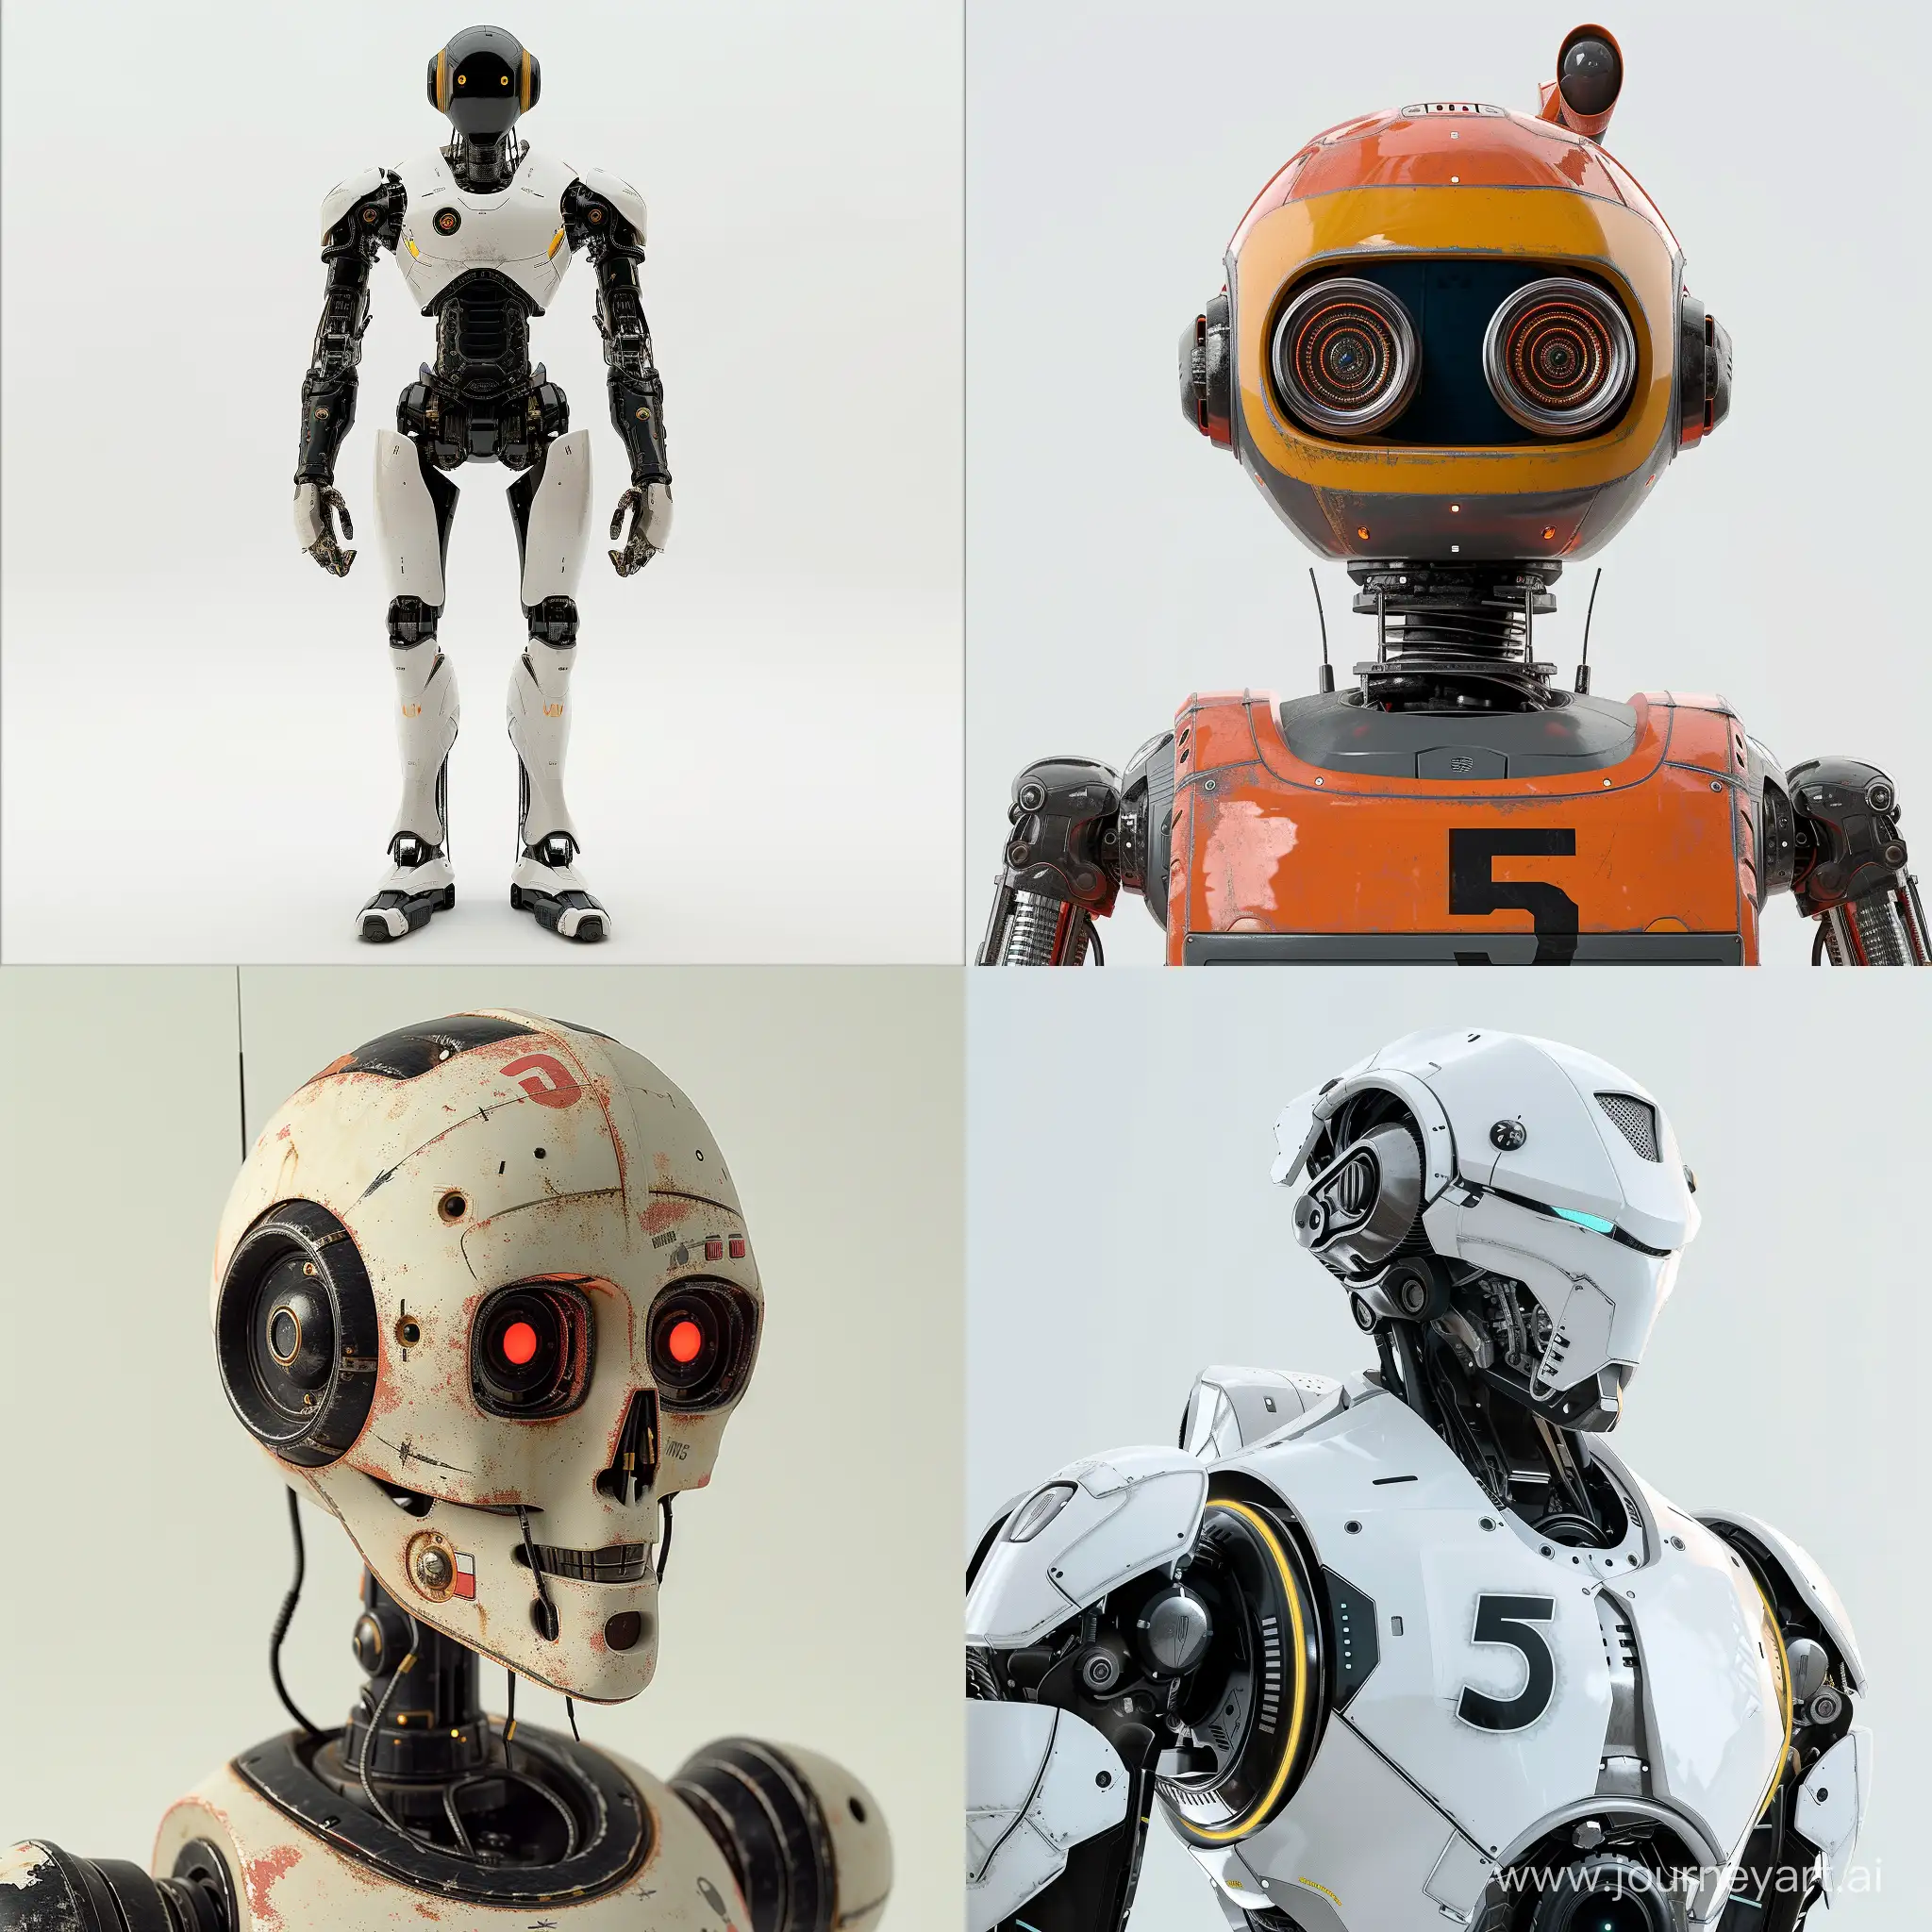 Futuristic-Number-5-Robot-in-11-Aspect-Ratio